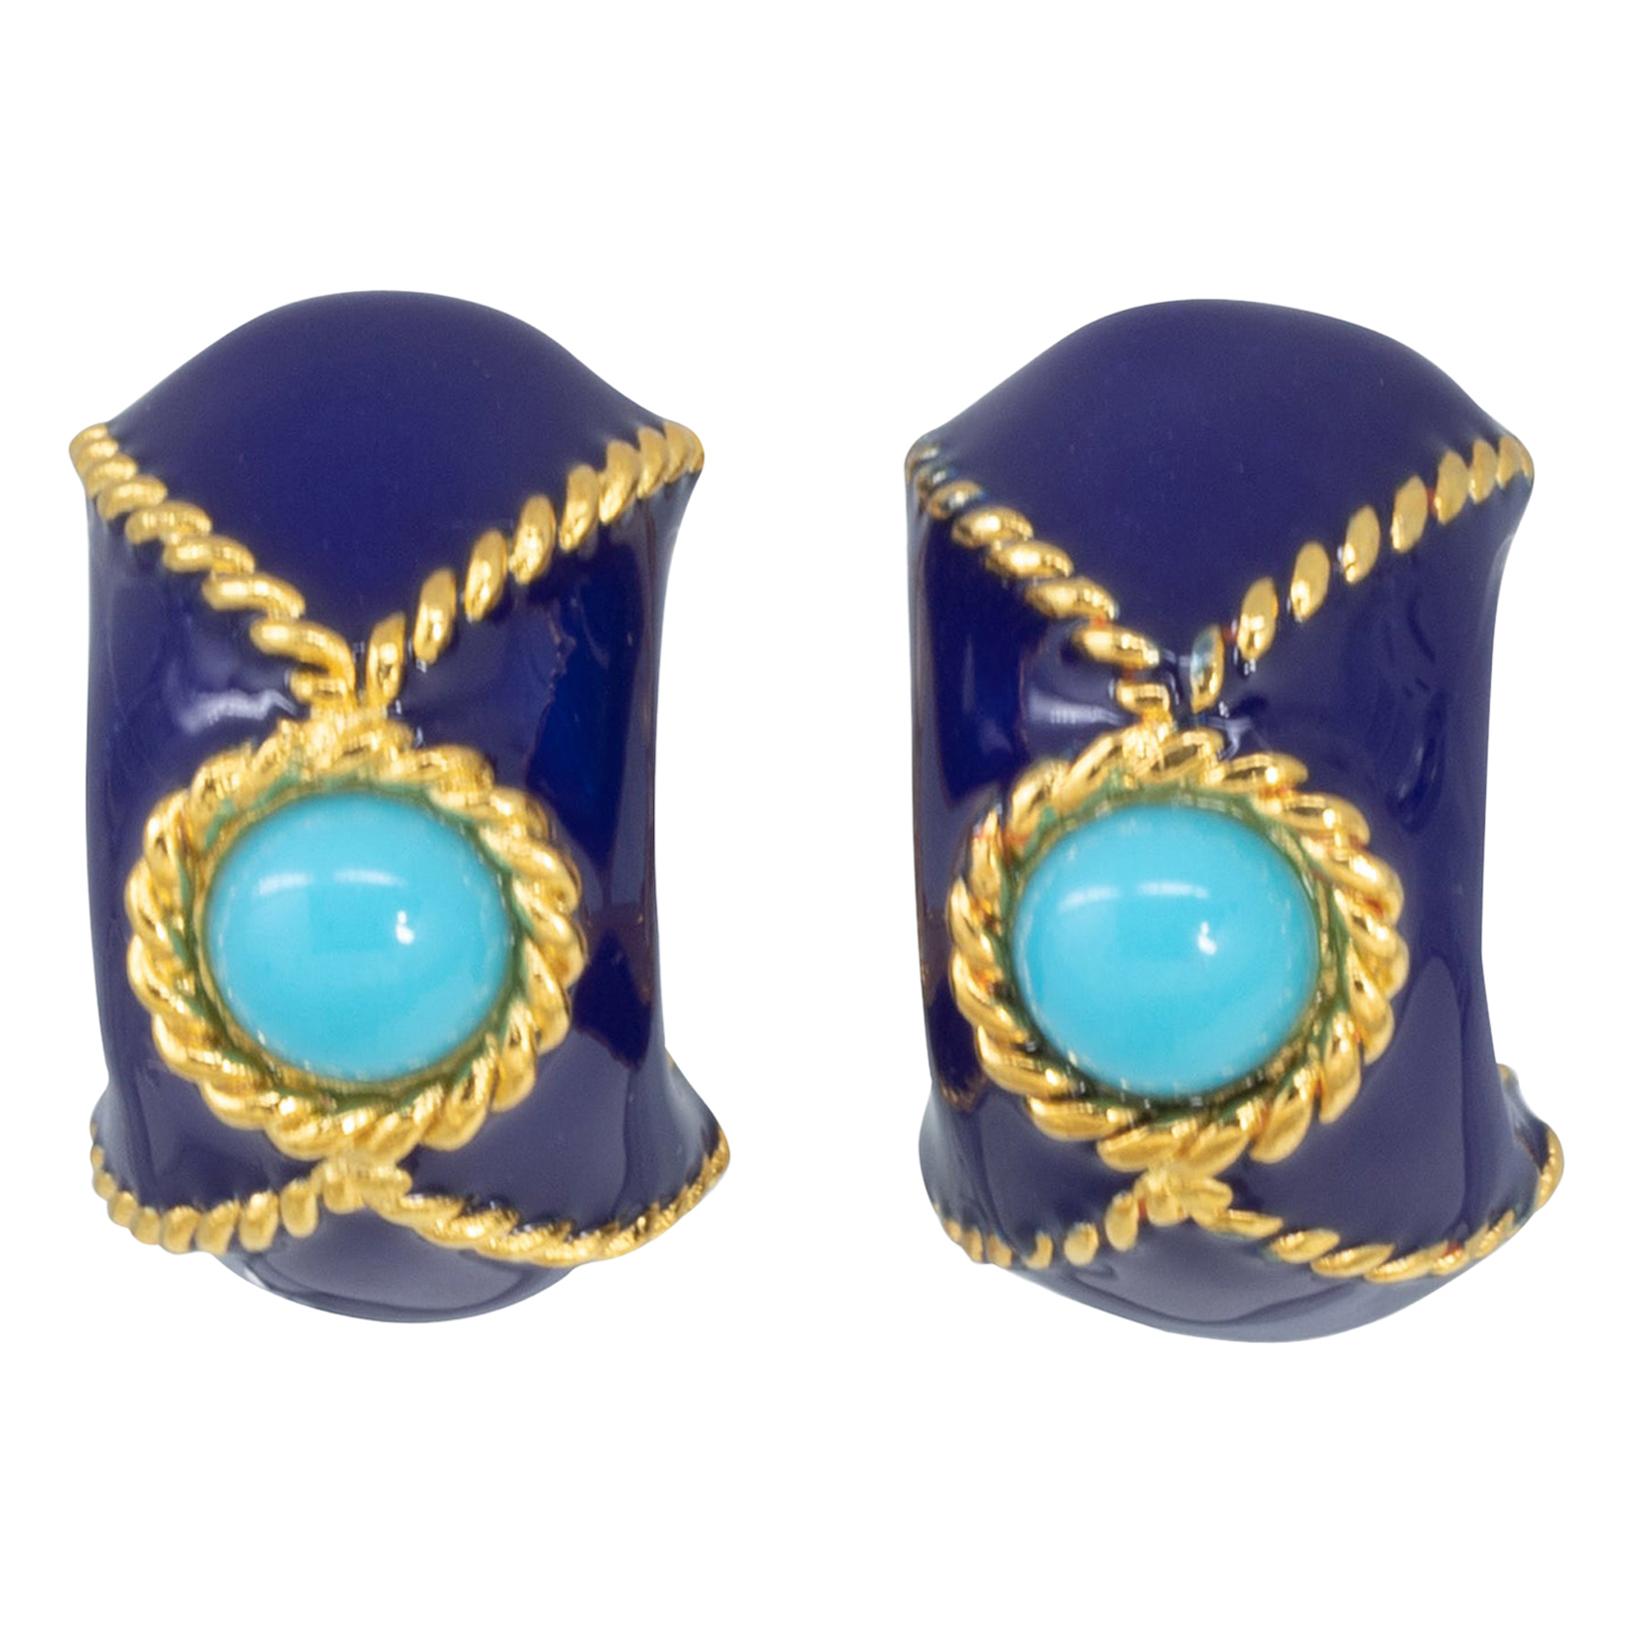 KJL Kenneth Jay Lane Gold Domed Clip On Earrings, Blue and Turquoise Enamel